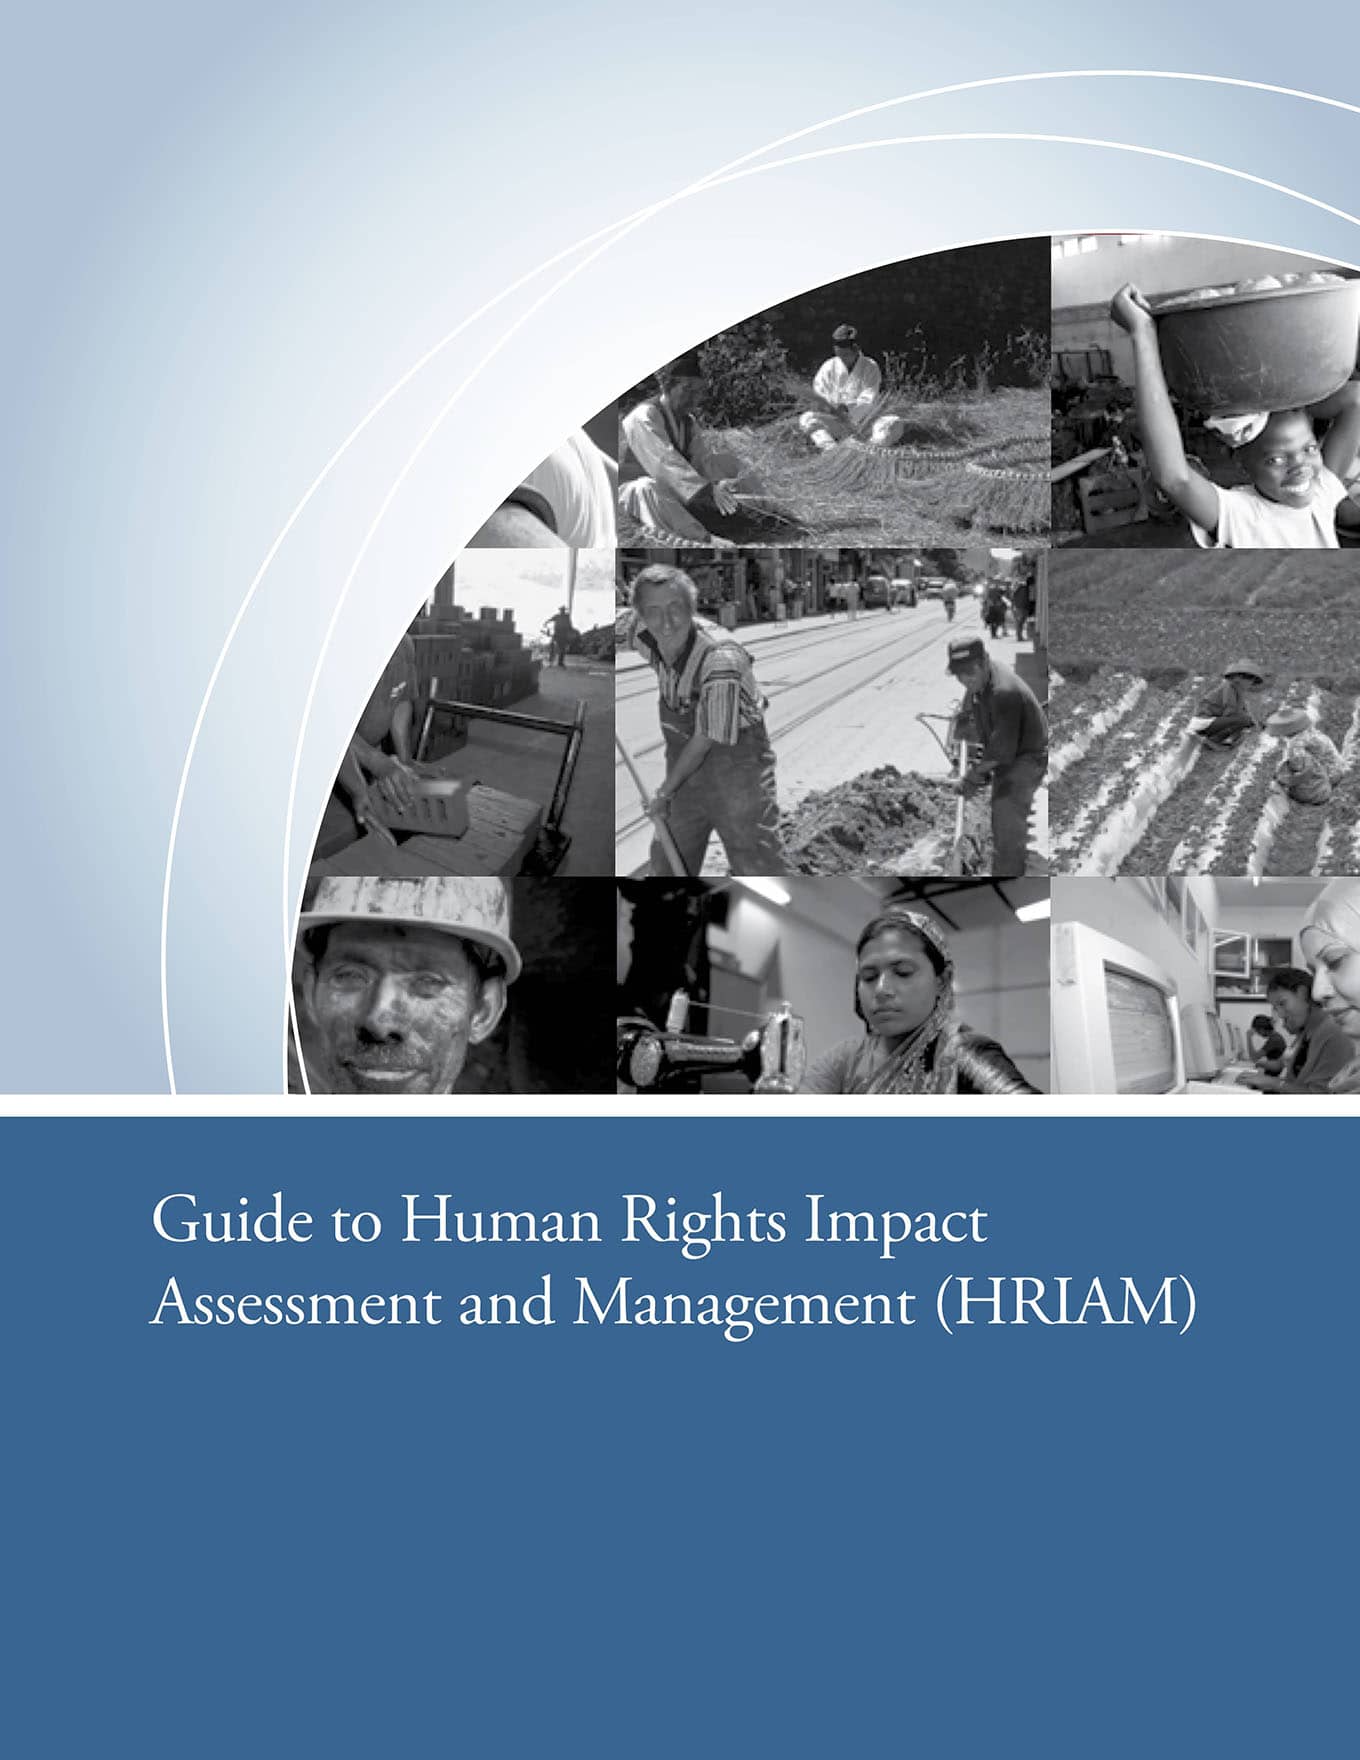 Guía de Evaluación y Gestión de Impactos en los Derechos Humanos (IBLF & IFC, 2010)